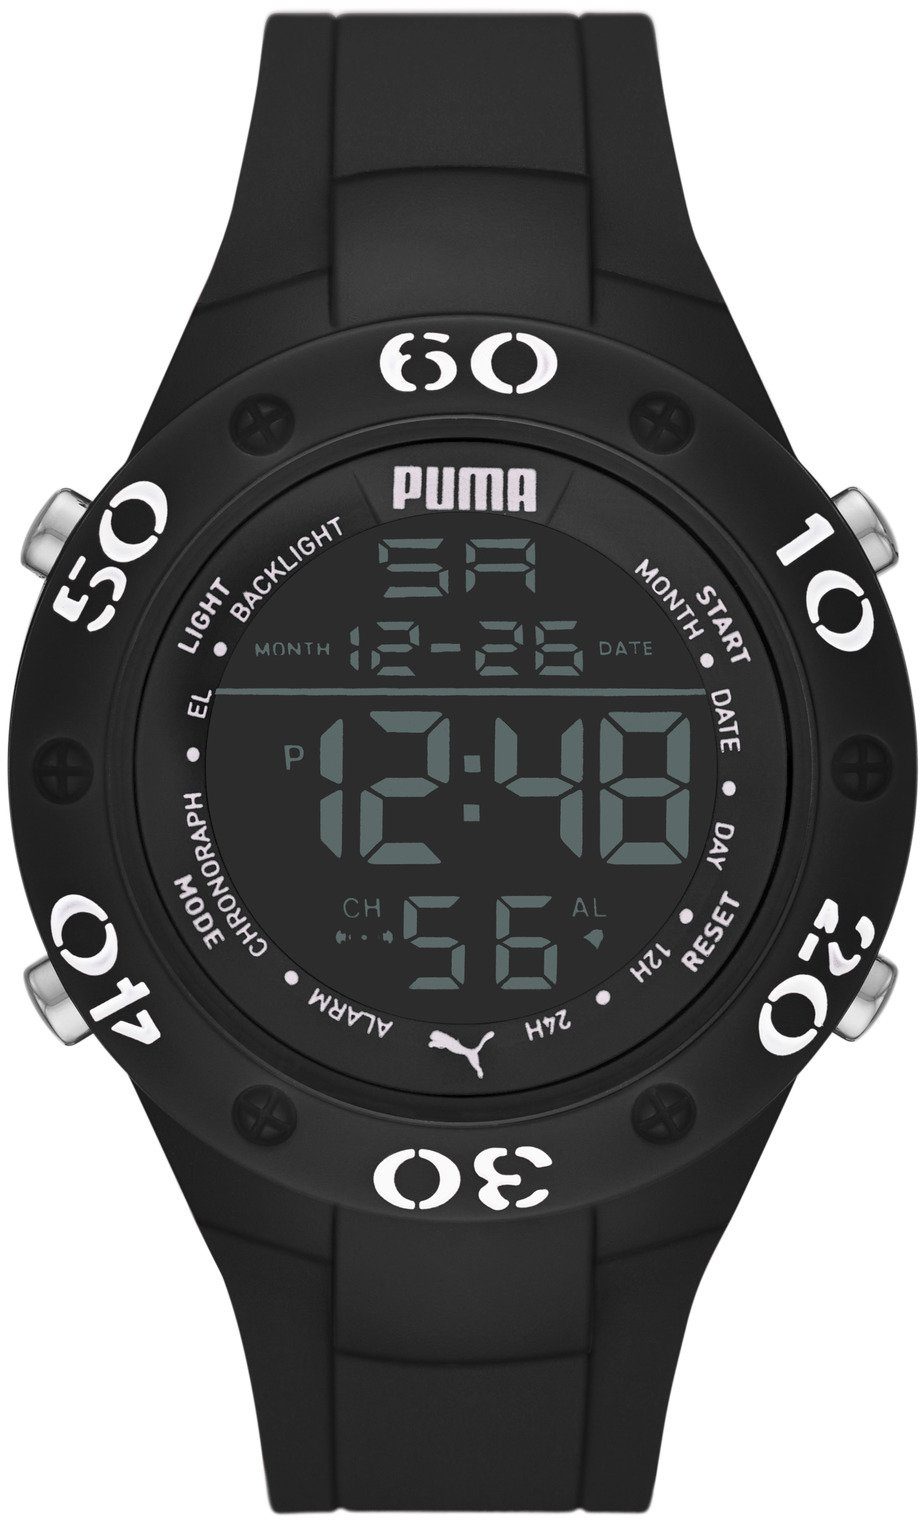 PUMA Digitaluhr »PUMA 8, P6036« online kaufen | OTTO